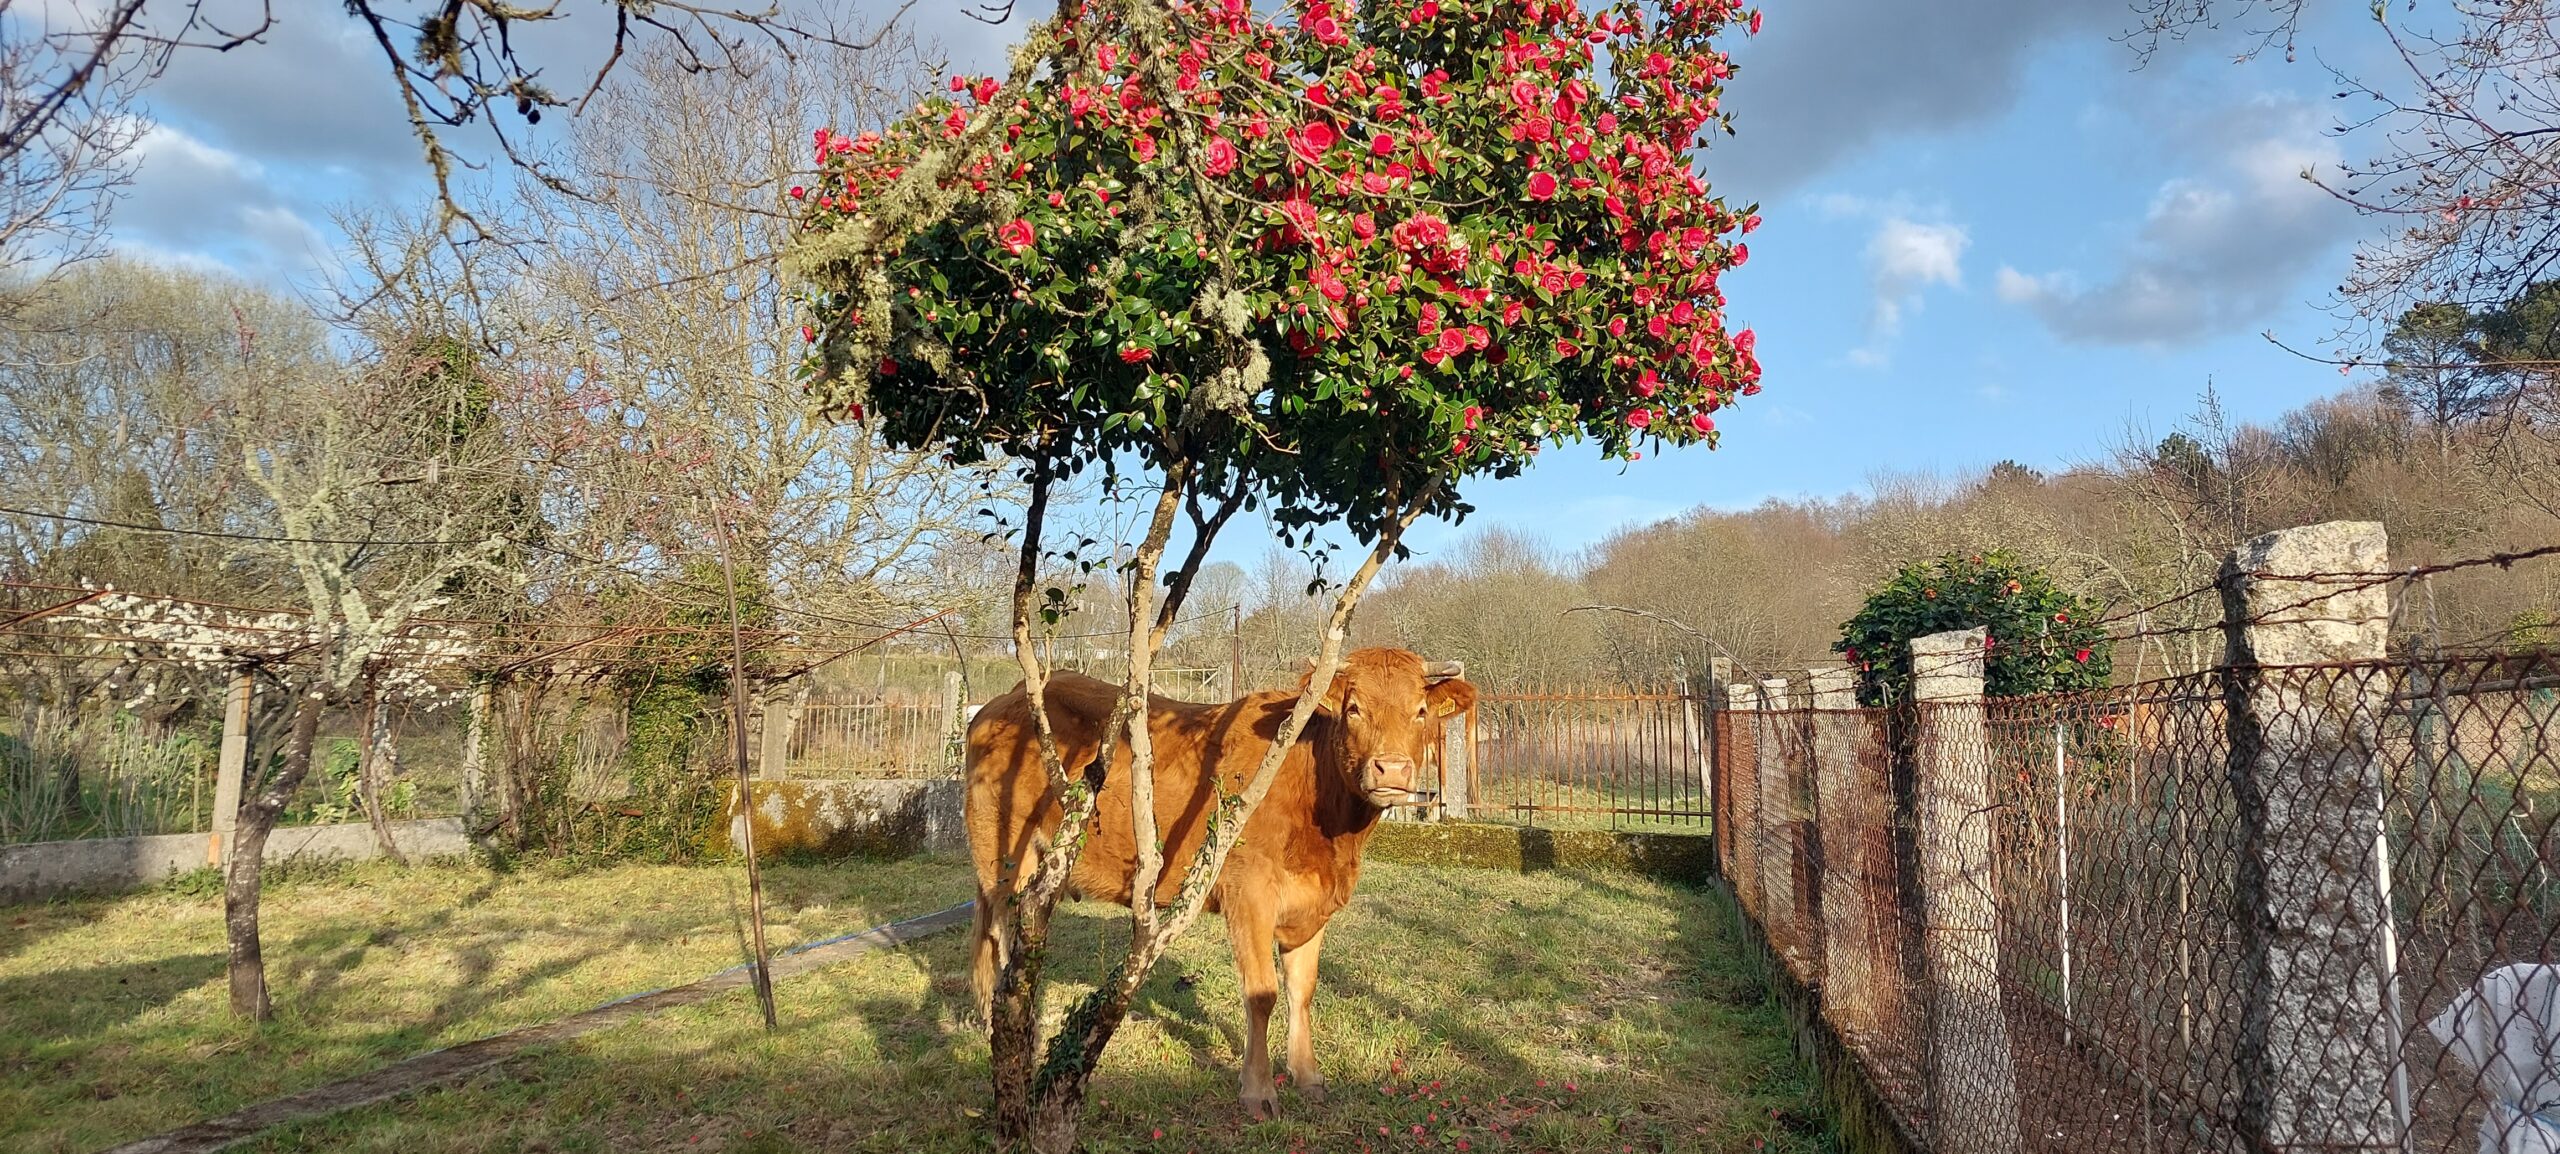 A cow posing on a farm's yard